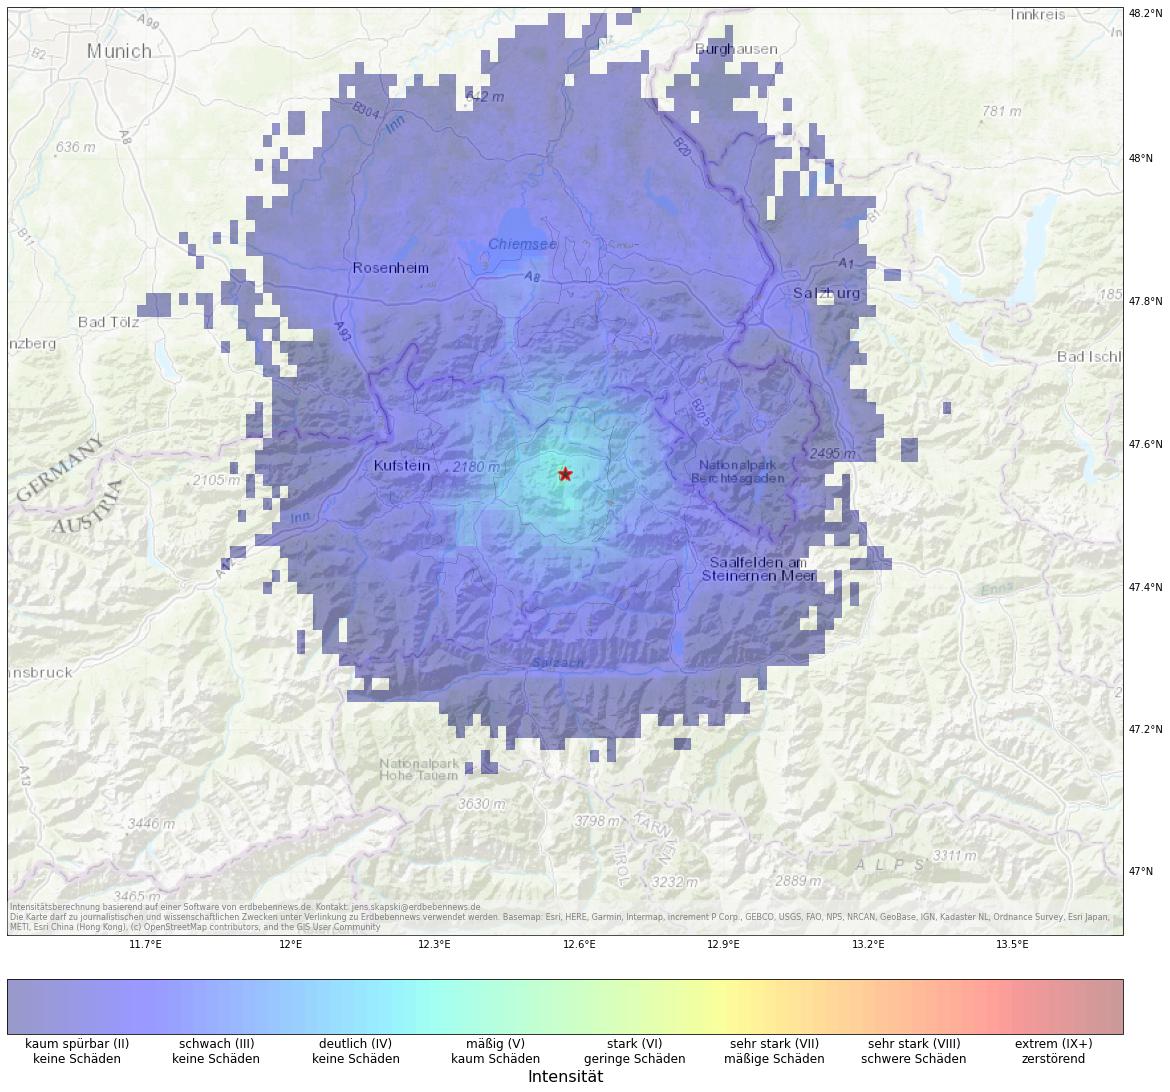 Berechnete Intensität (ShakeMap) des Erdbebens der Stärke 4.0 am 23. Januar, 04:50 Uhr in Österreich